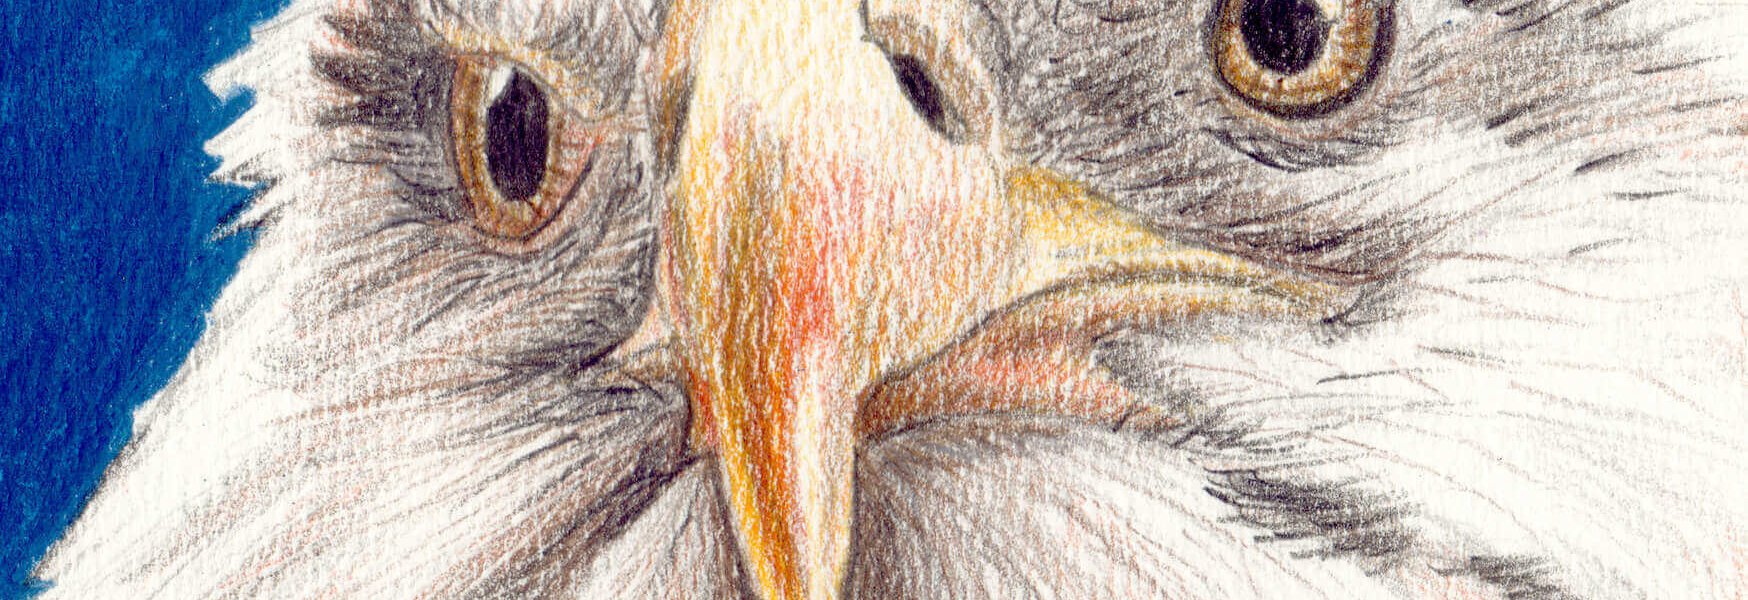 Adler zeichnen - Buntstiftkolorierung